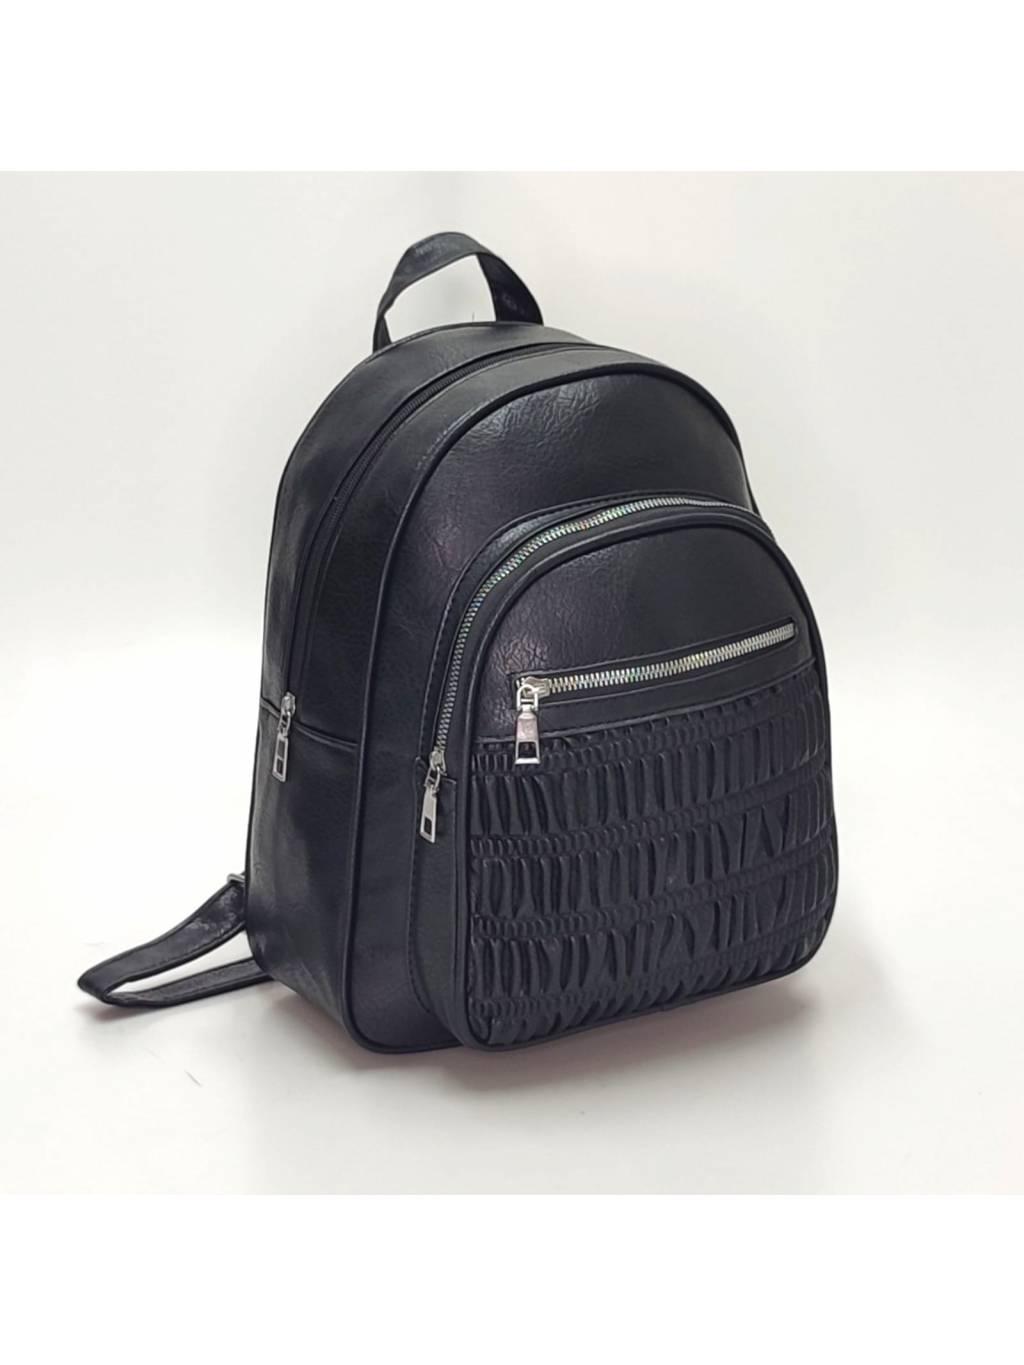 Dámsky ruksak 2564 čierny www.kabelky vypredaj.eu (8)